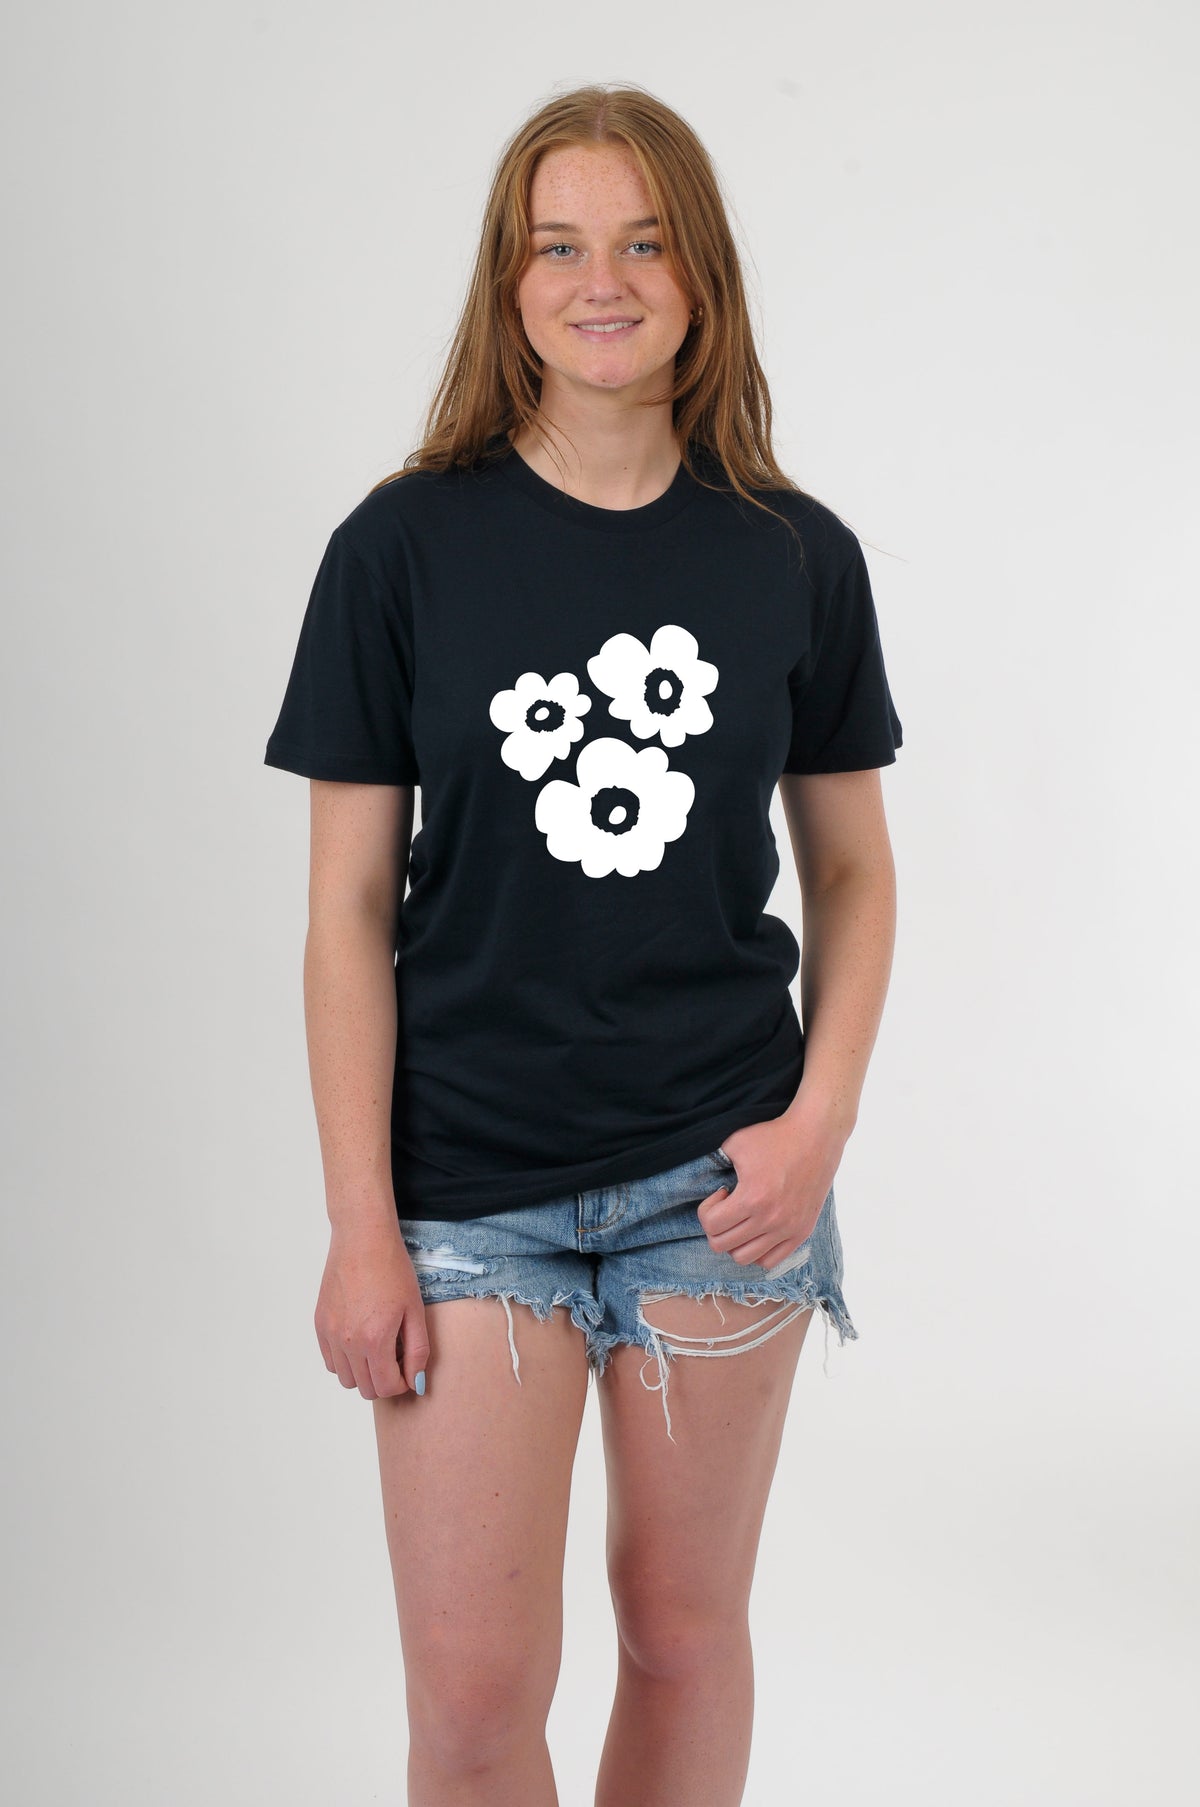 Tee Shirt - 3 Flowers Print - Pre Order